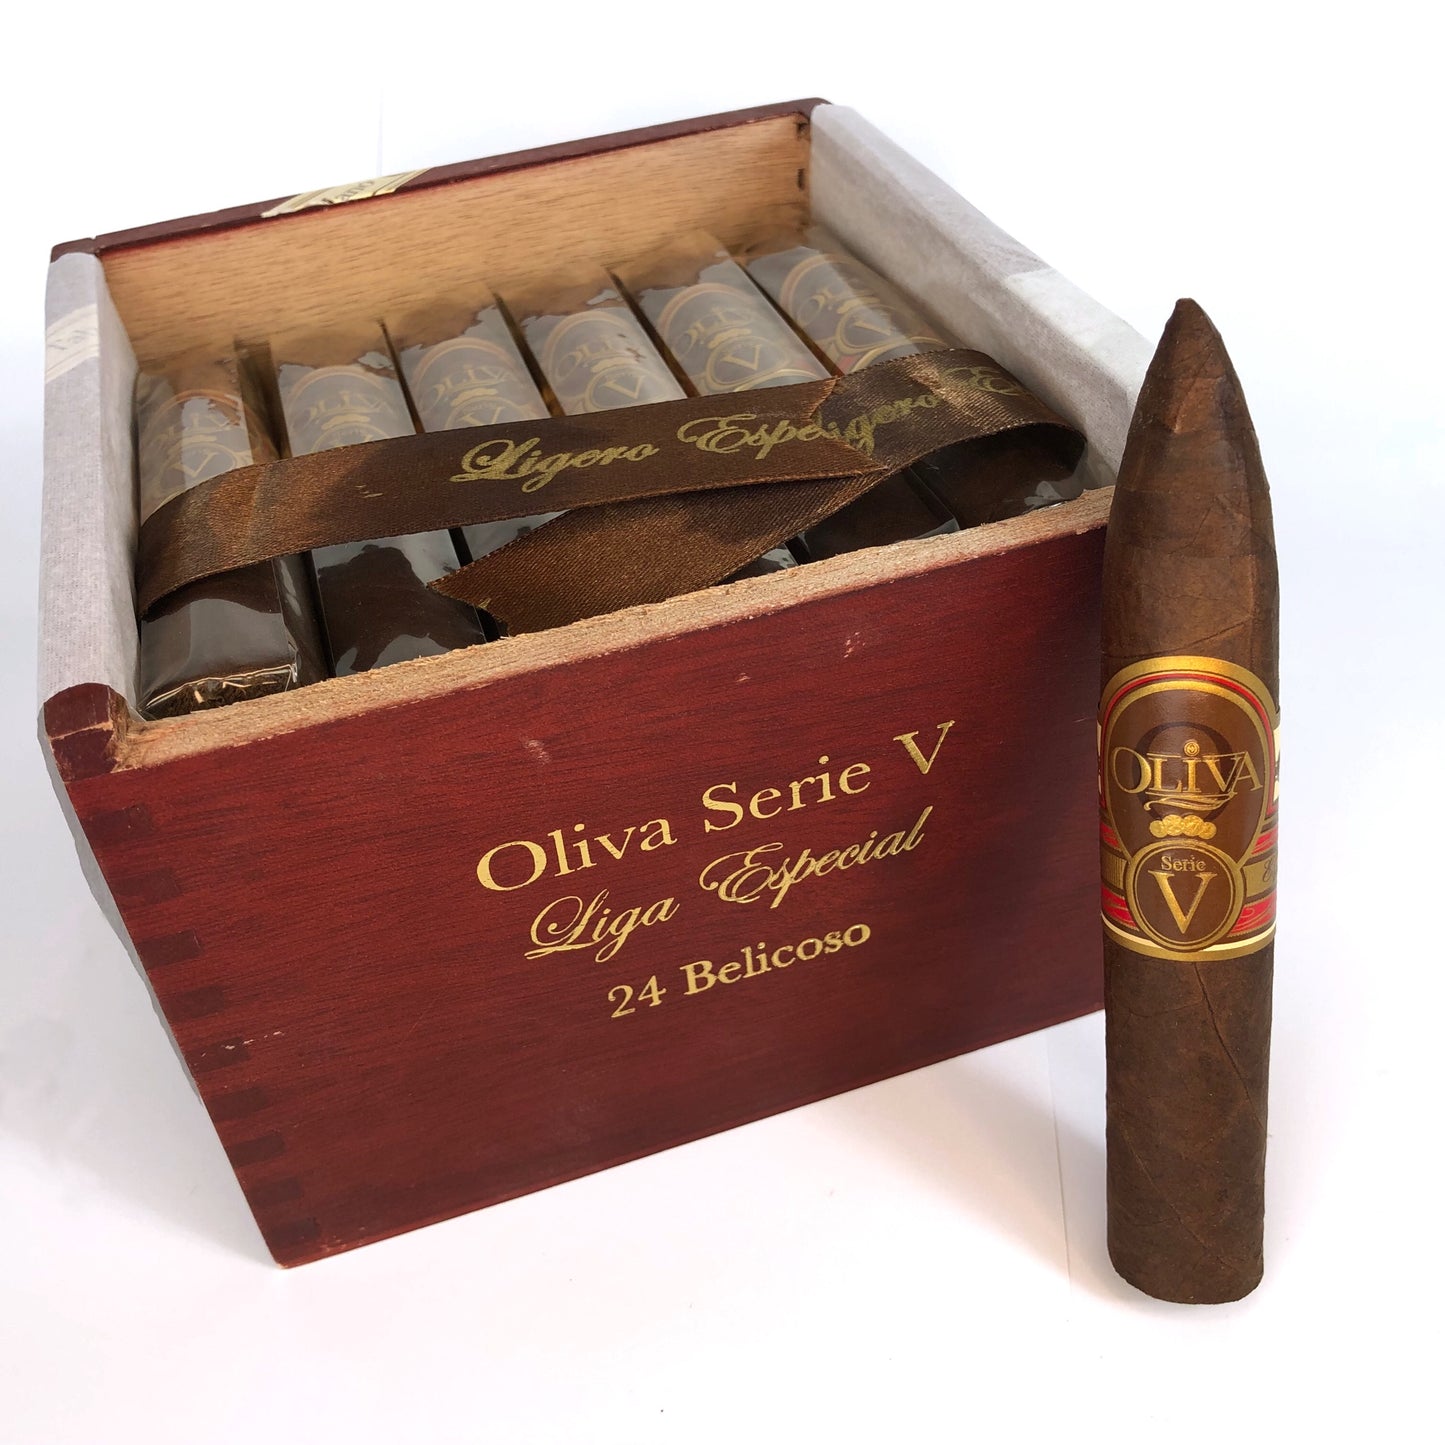 Oliva Serie V Belicoso box of 24 cigars